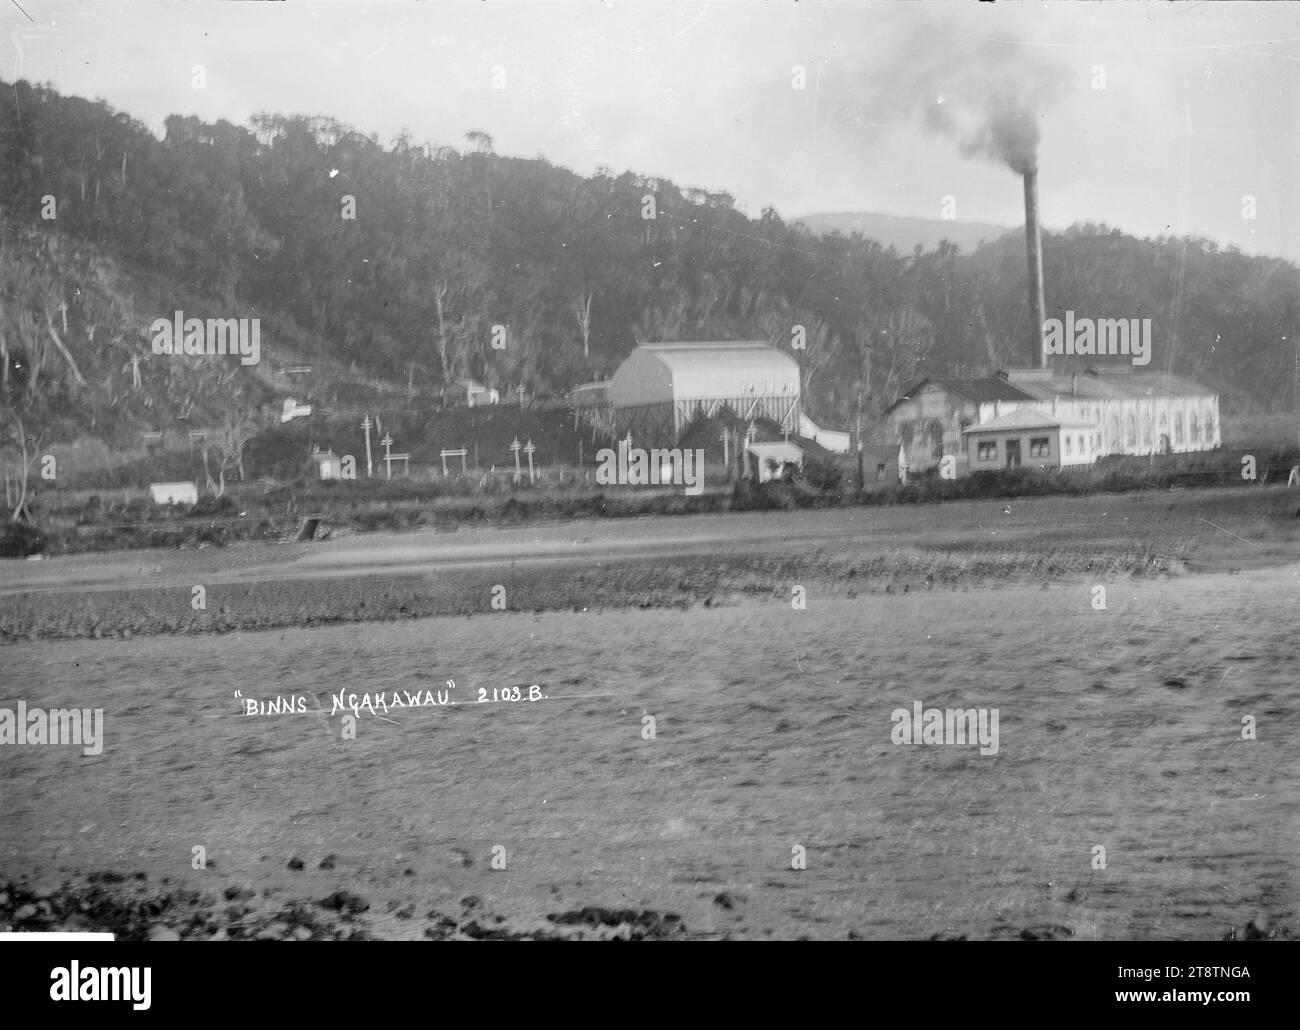 Binns, Ngakawau, Côte Ouest, vue de 'Binns' à Ngakawau prise du pont sur la rivière. Peut-être une installation de manutention du charbon et une centrale électrique., au début des années 1900 Banque D'Images